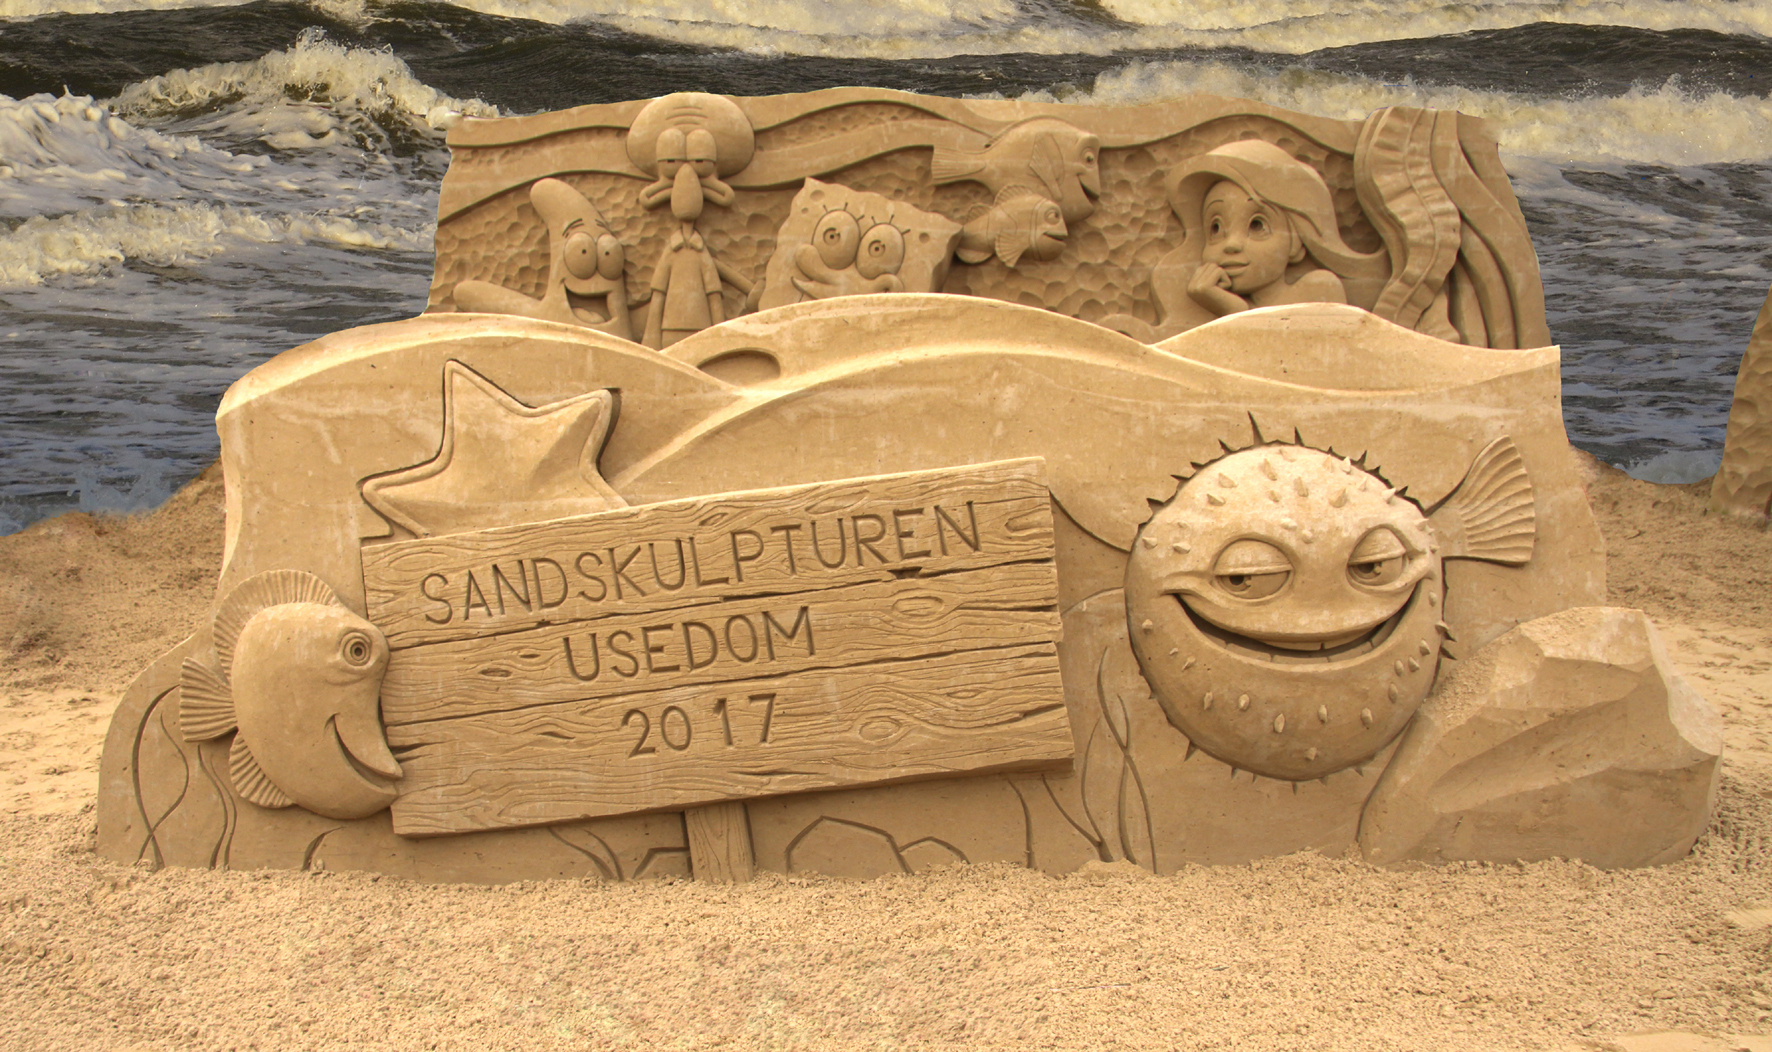 Sandskulpturen Usedom 2017